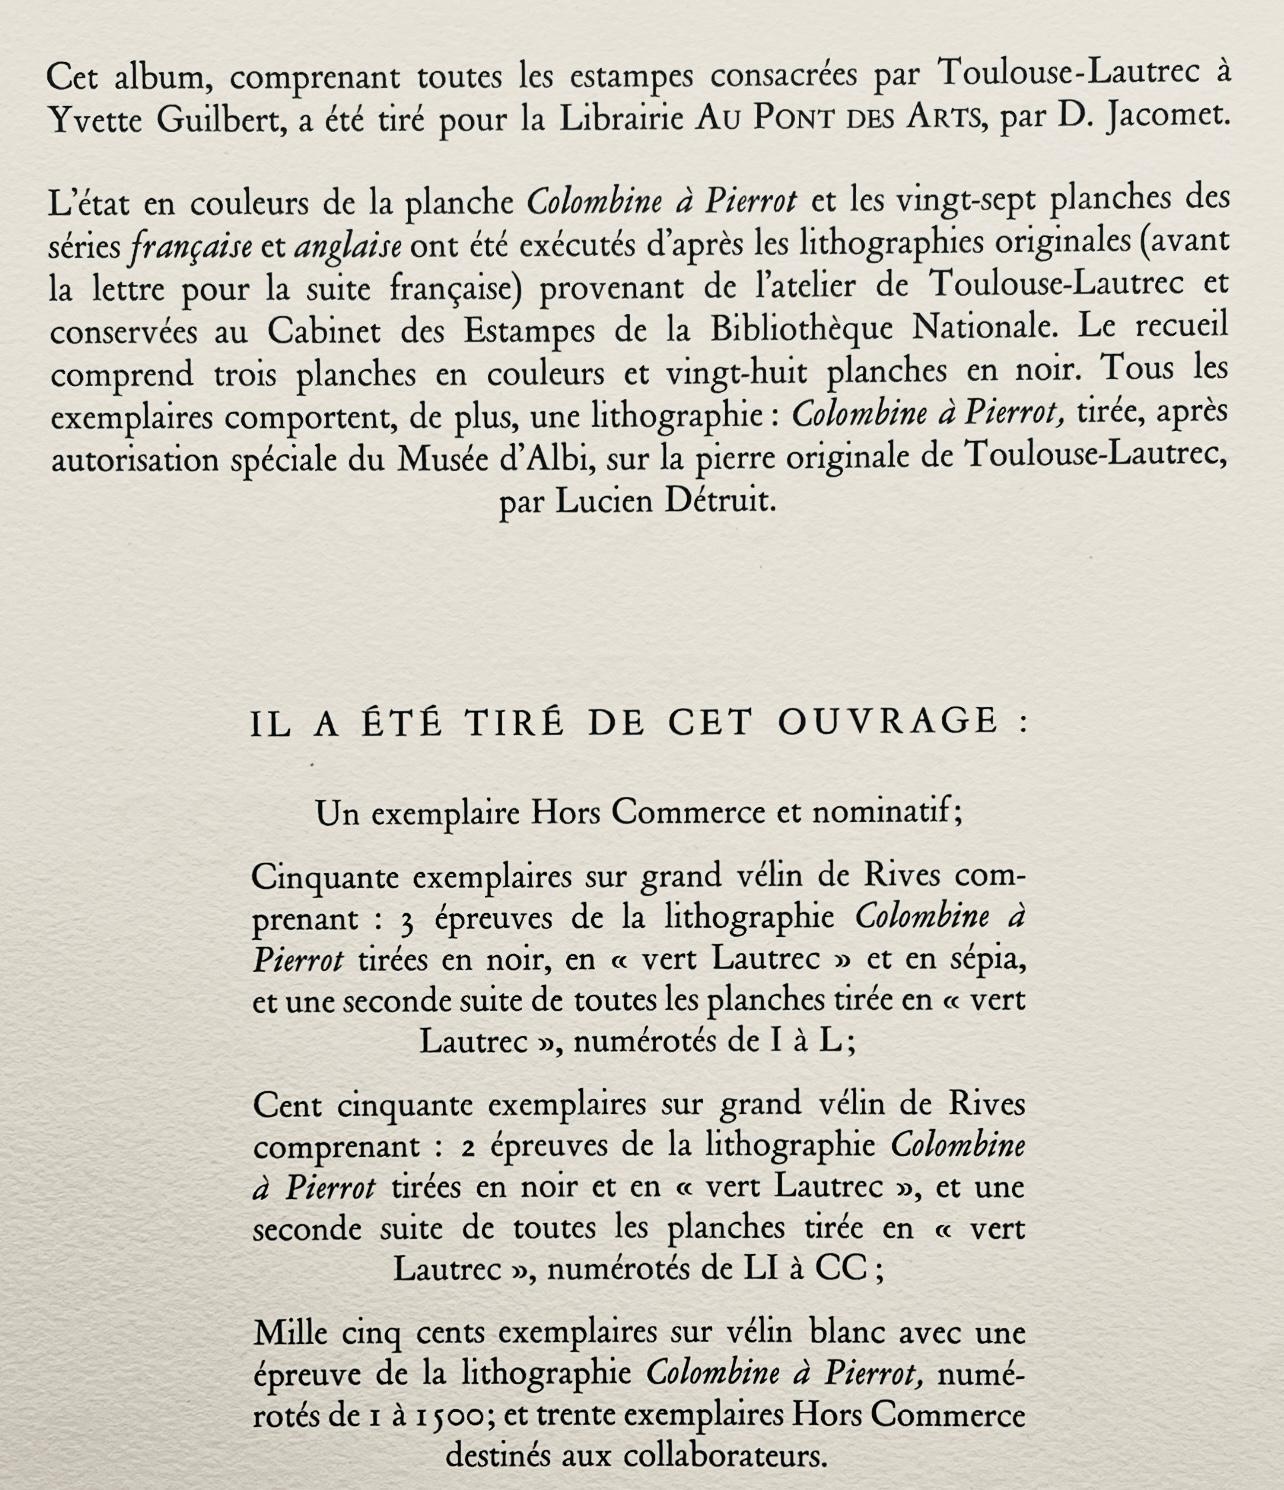 Toulouse-Lautrec, Composition, Yvette Guilbert vue par Toulouse-Lautrec (after) For Sale 6